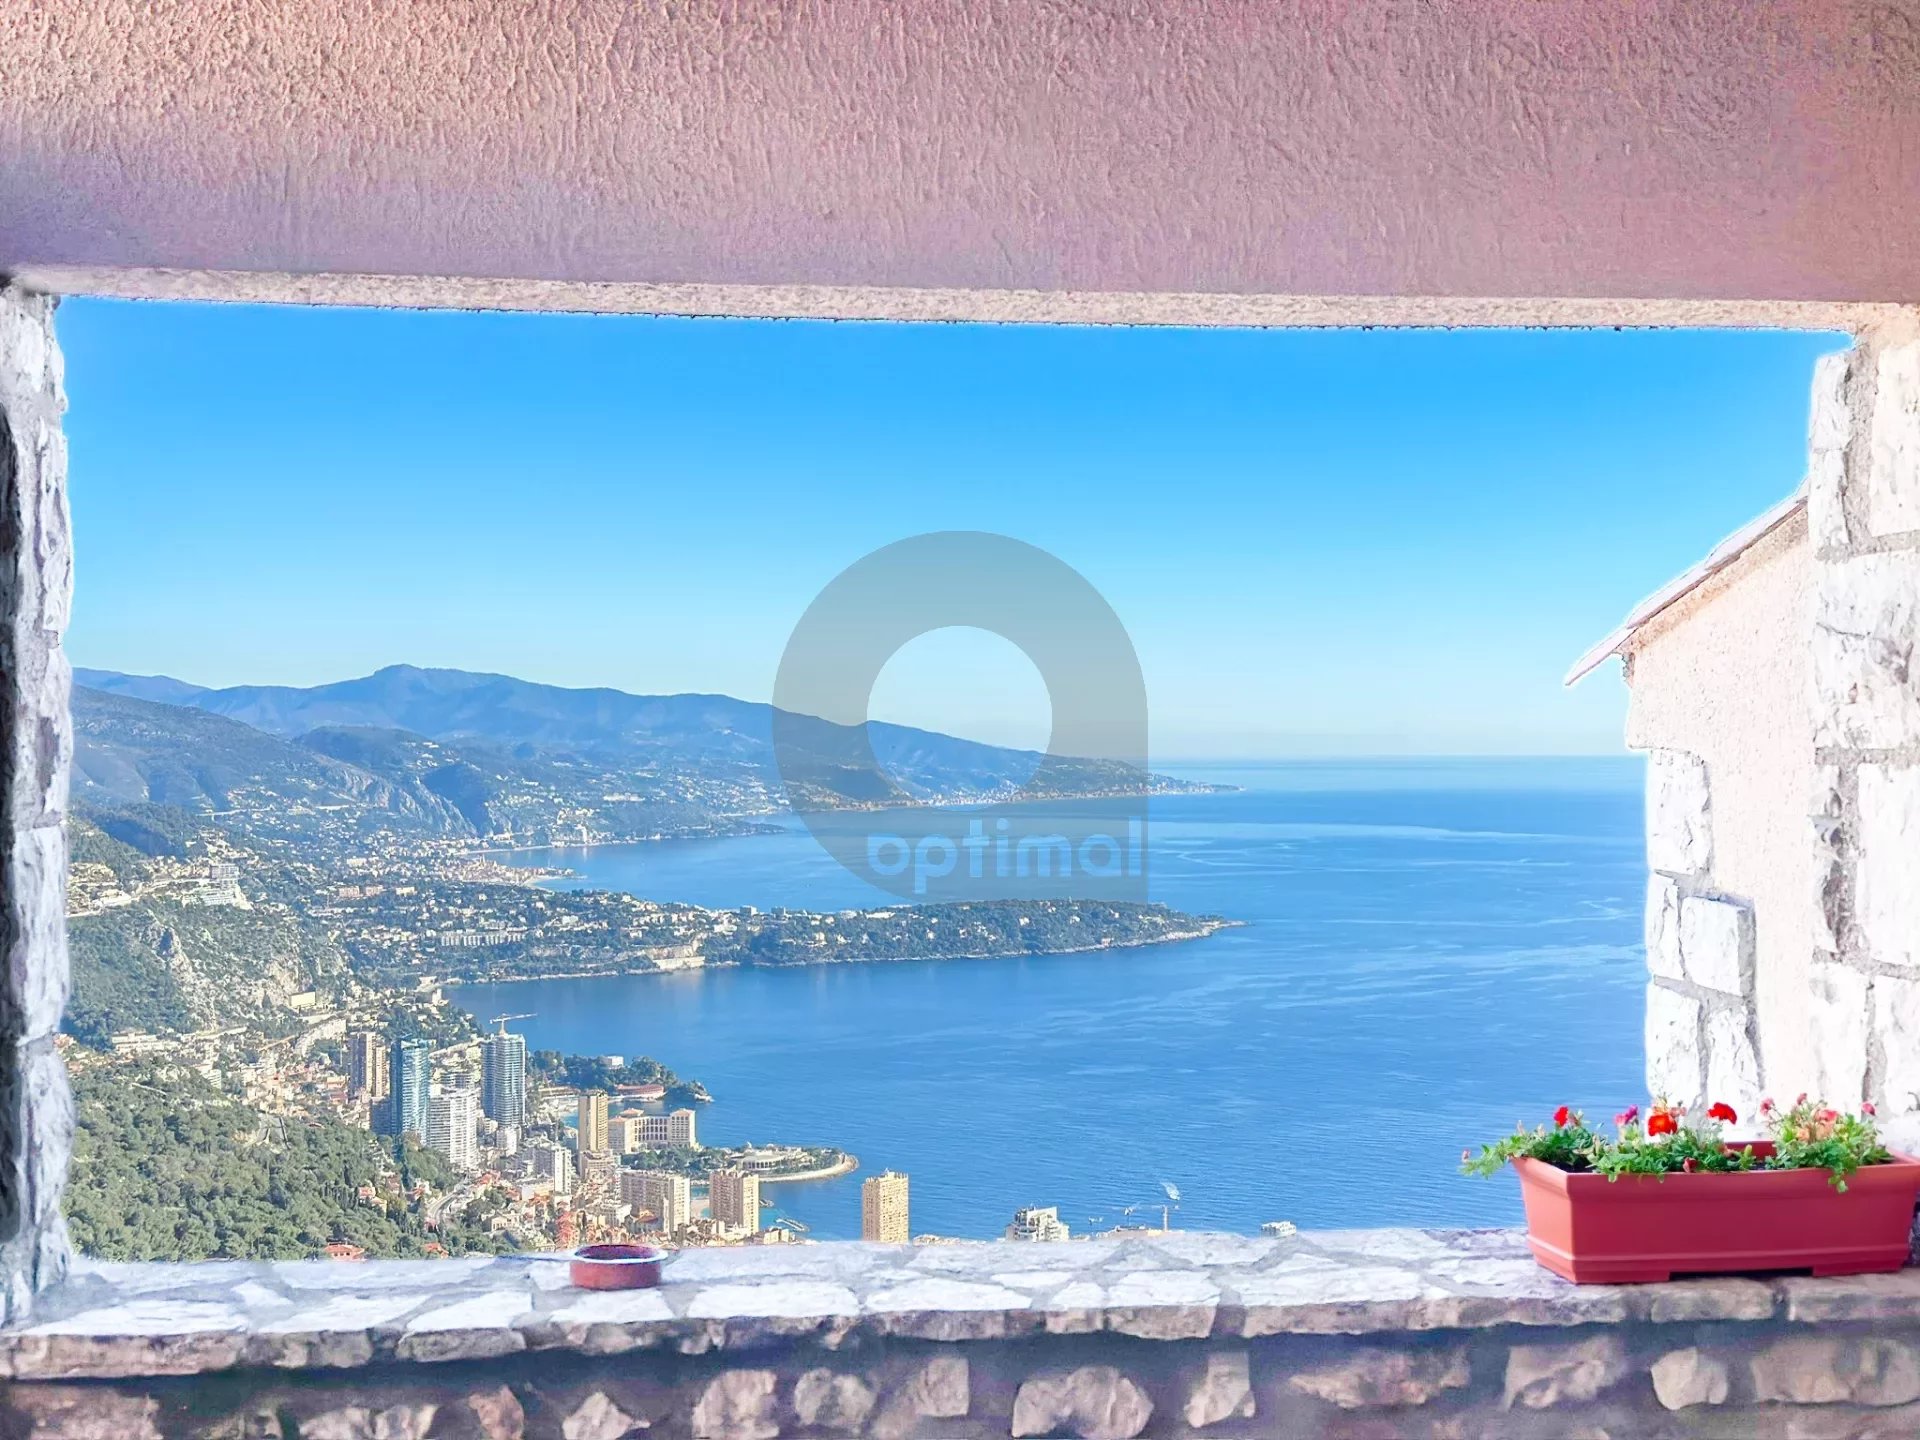 Villa  avec Vue Panoramique sur Monaco Le Cap Martin et l'Italie – La Turbie